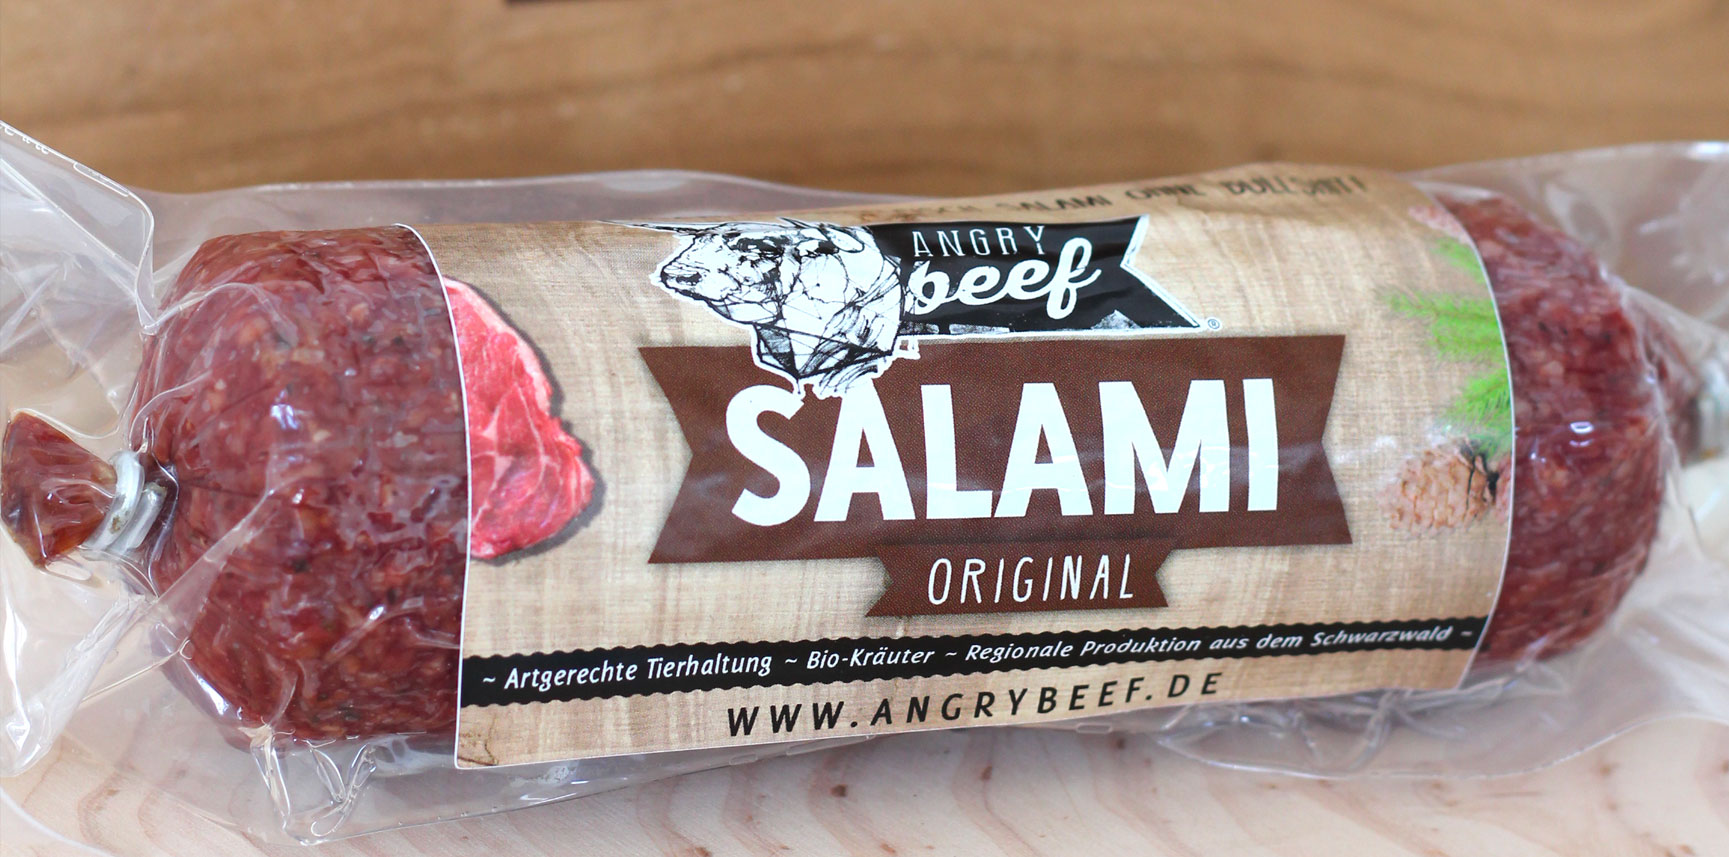 Angry Beef Salami Original